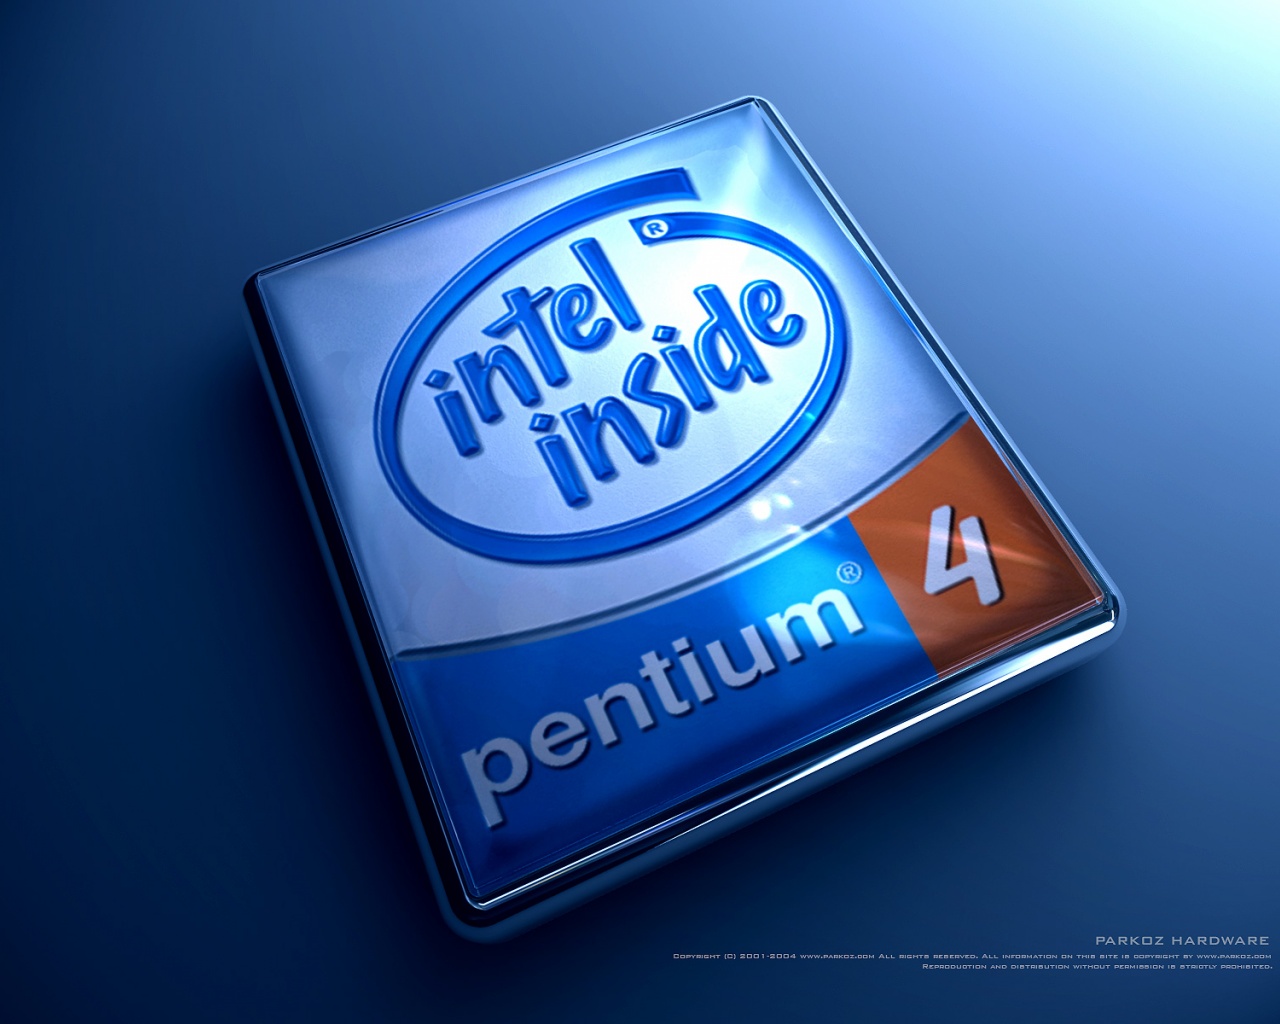 Pentium Desktop Pc And Mac Wallpaper